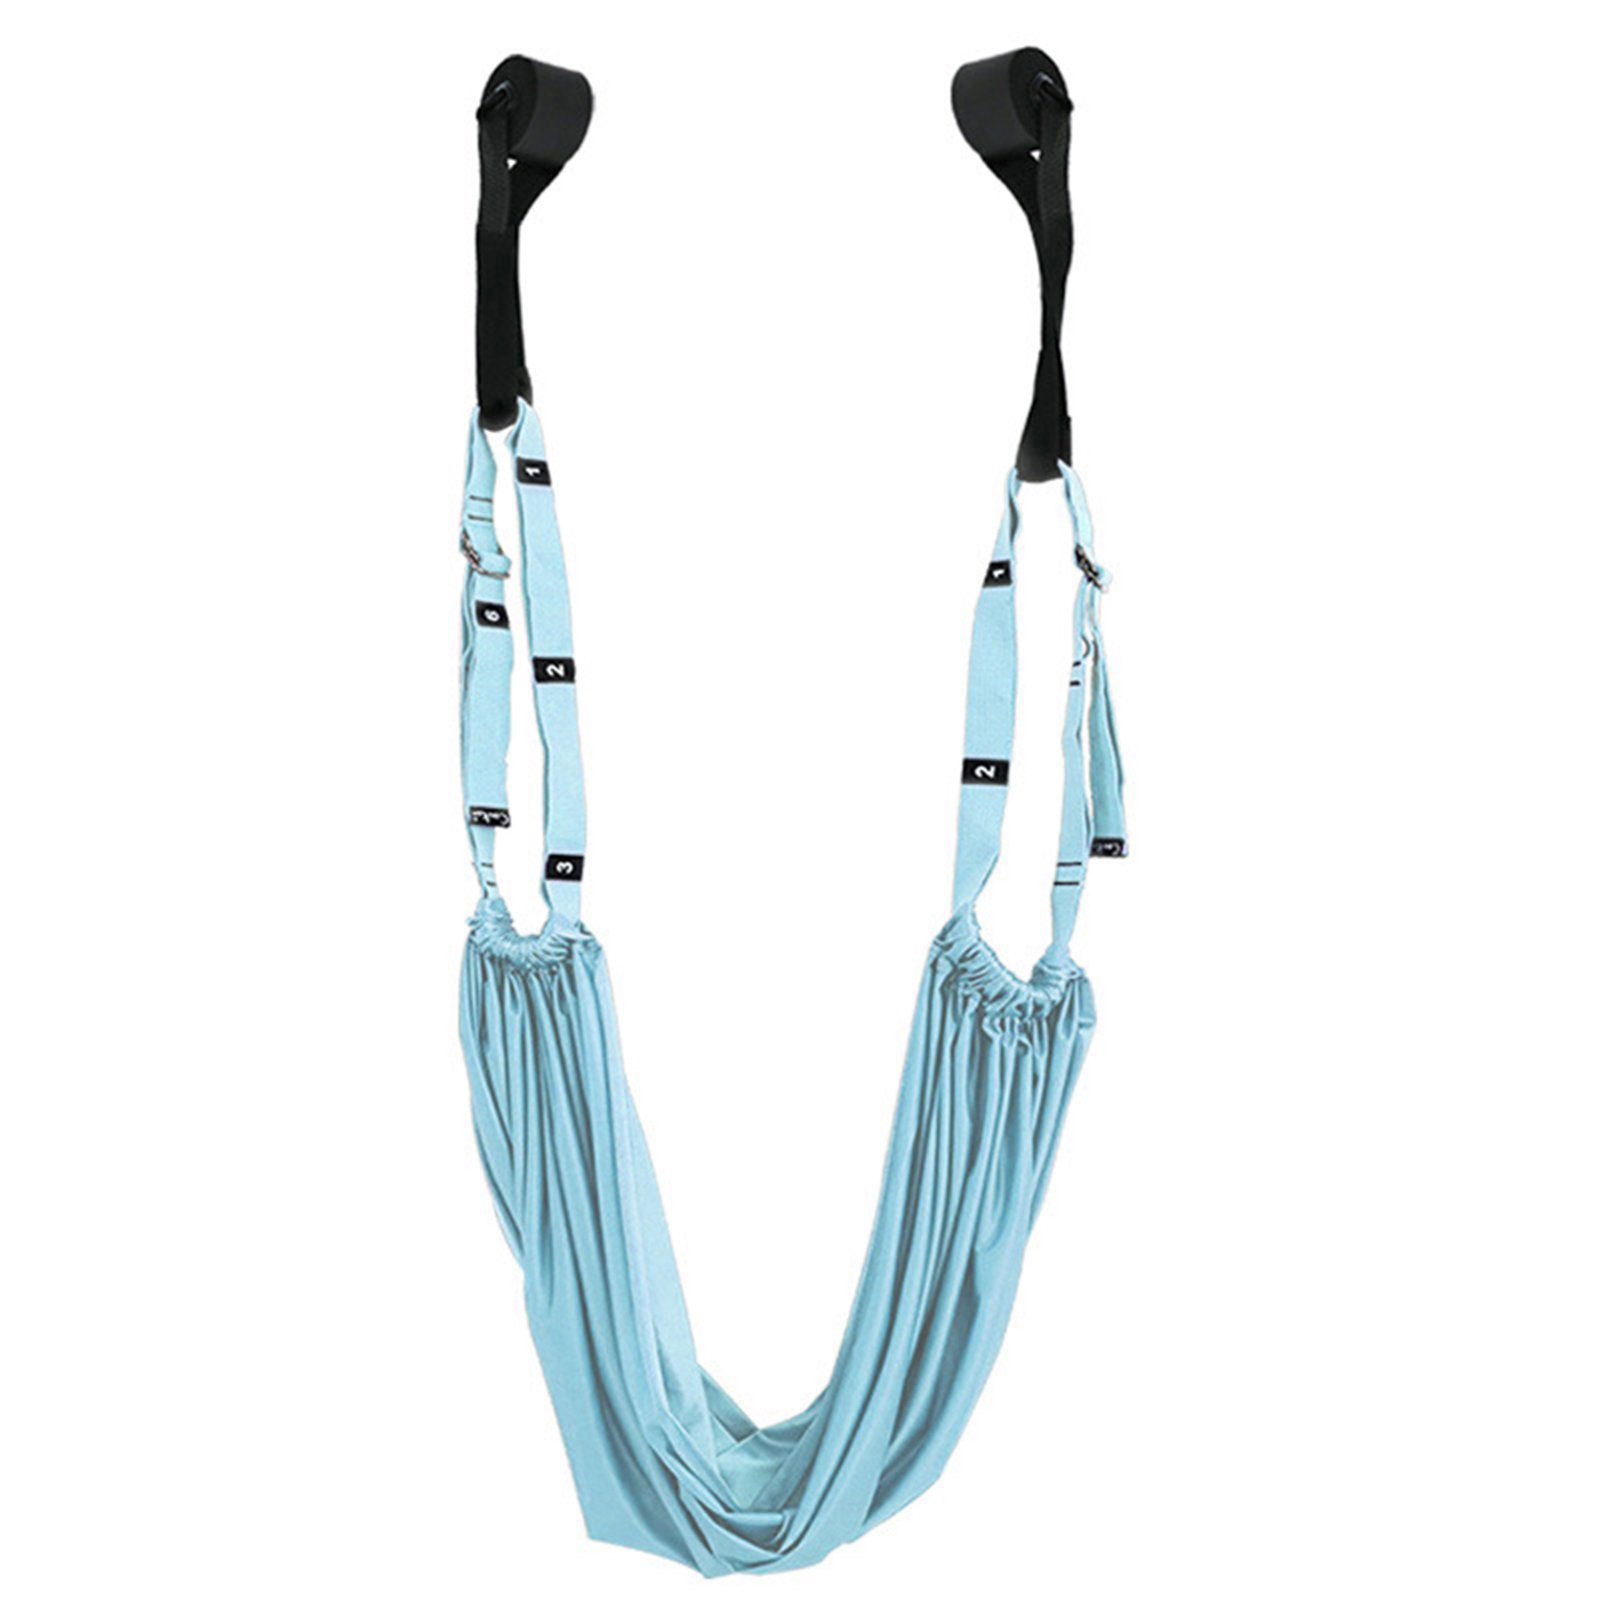 Blusmart Gymnastikbänder Bunte Aerial-Yoga-Hängematte, Hochelastisches, blue Verstellbares